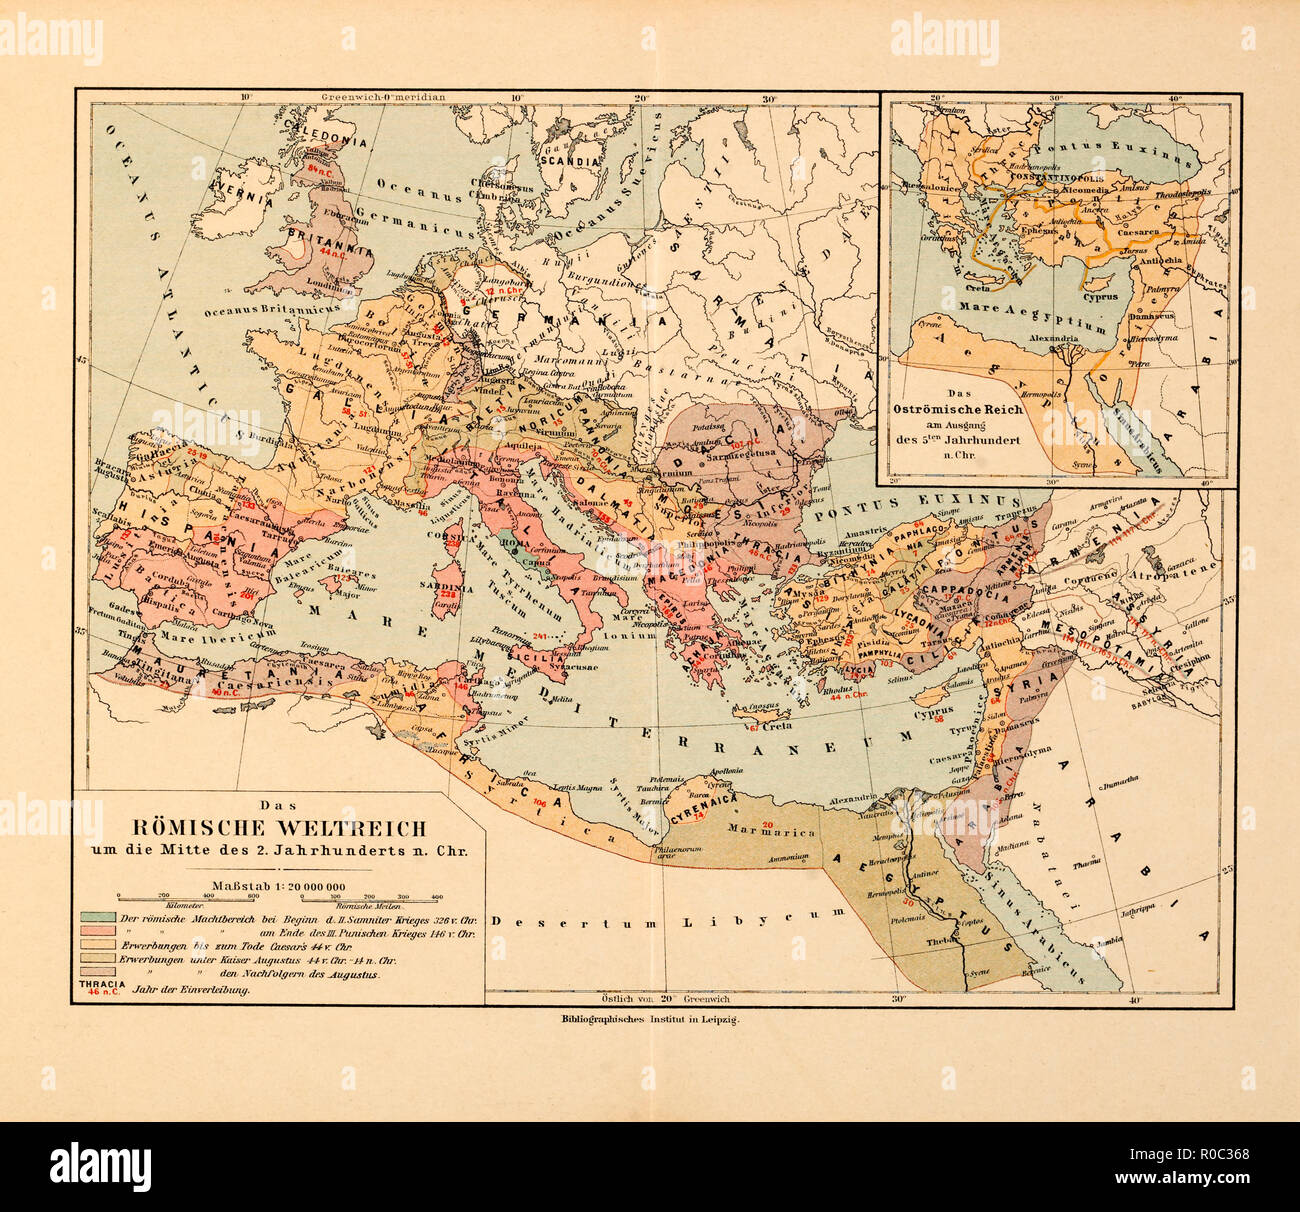 La carte de l'Empire romain, vers le milieu du 2e siècle AD, Allemagne Banque D'Images